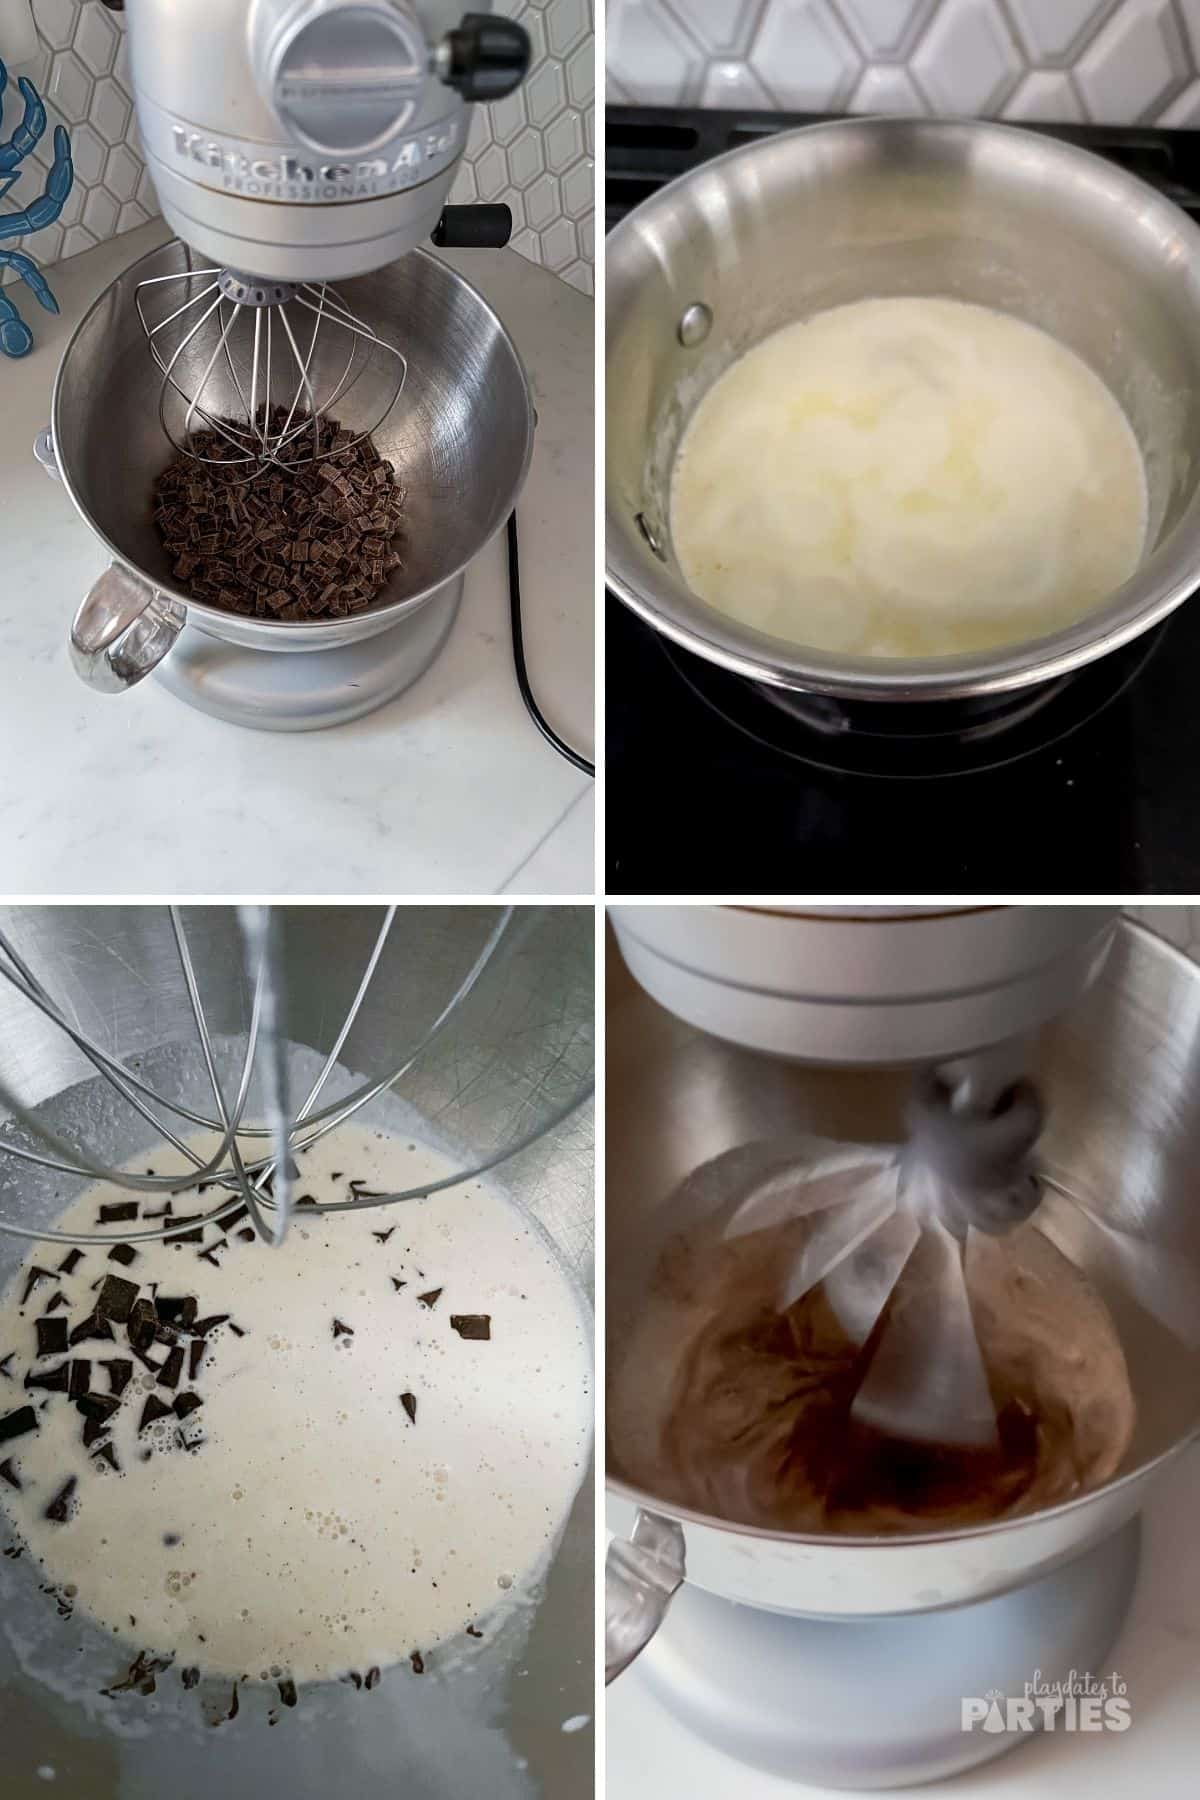 How to make chocolate ganache.